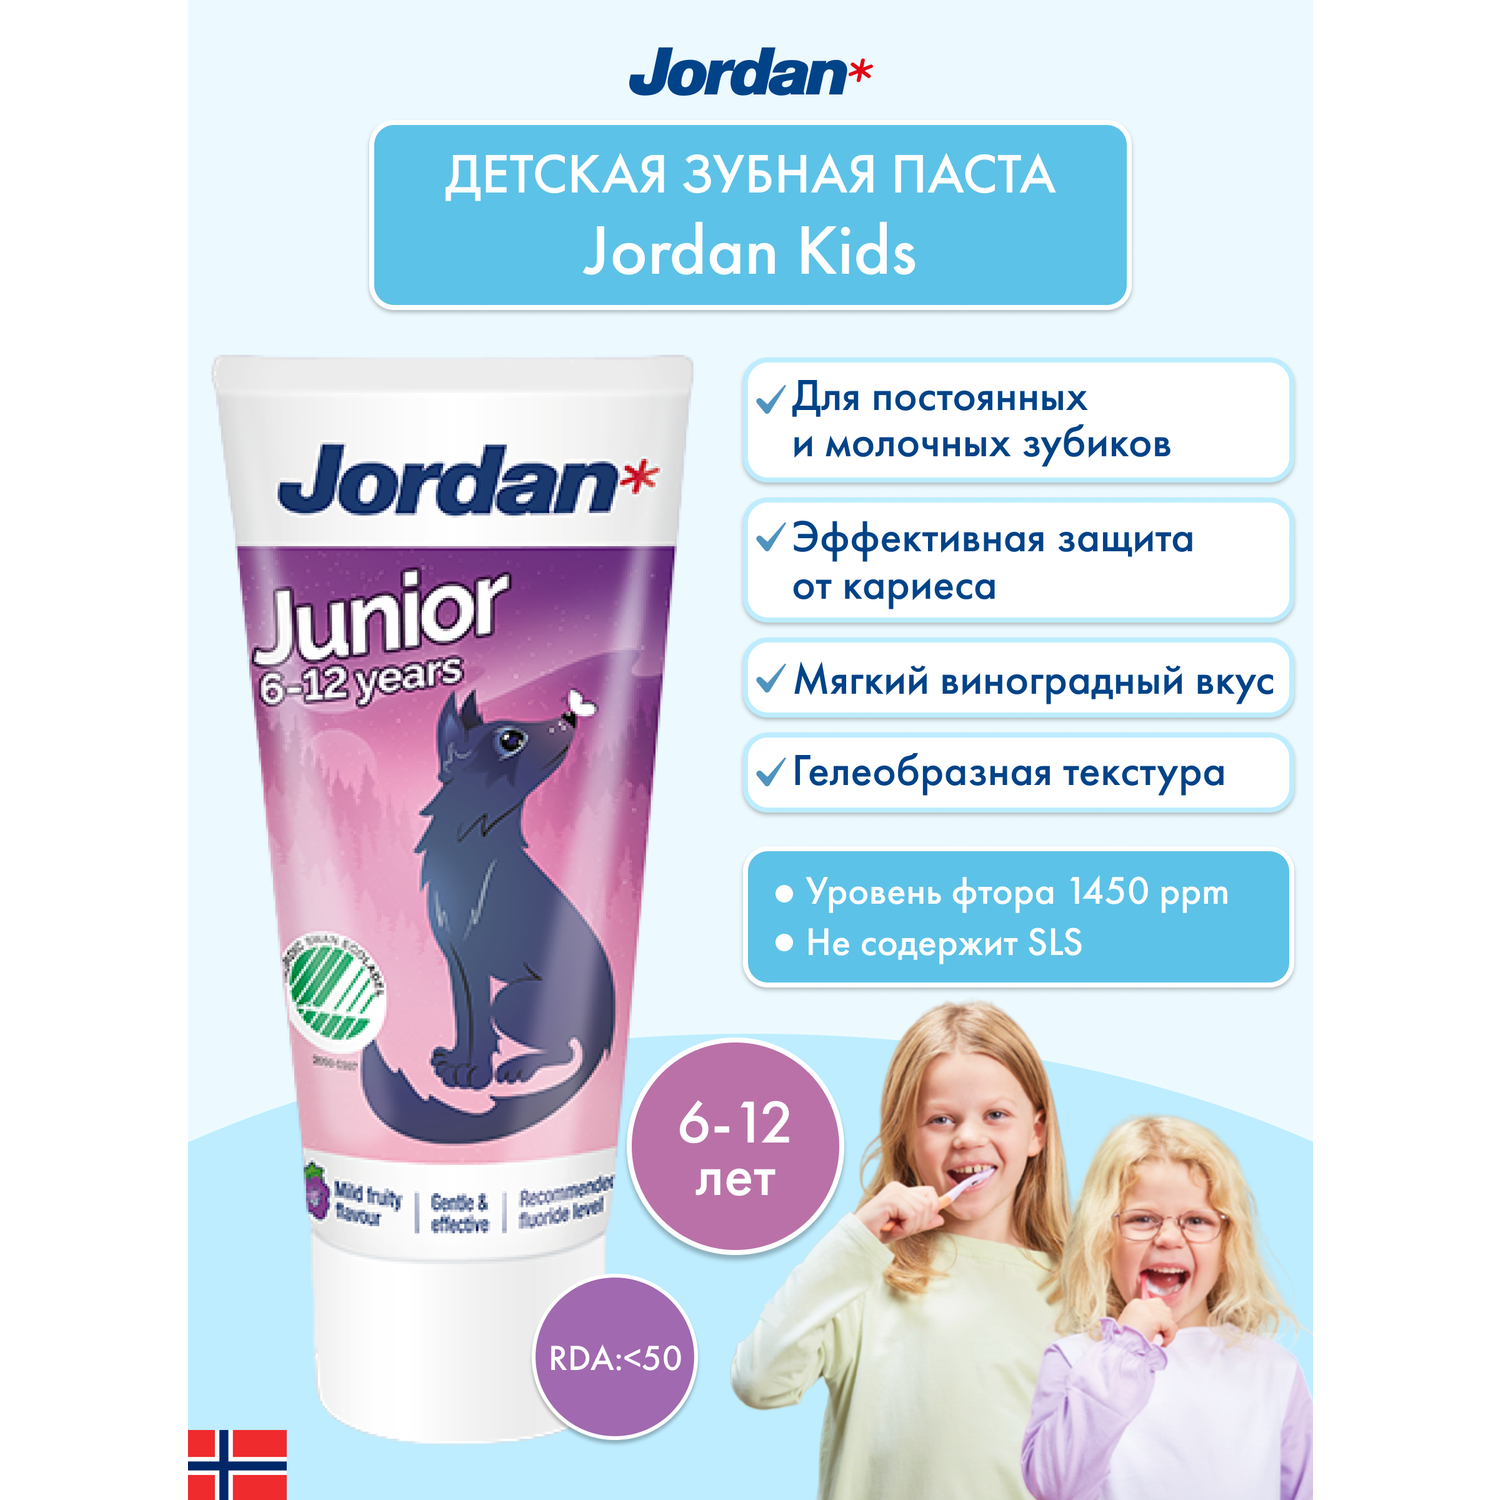 Детская зубная паста JORDAN Junior 6-12 с фтором и нежным фруктовым вкусом - фото 2